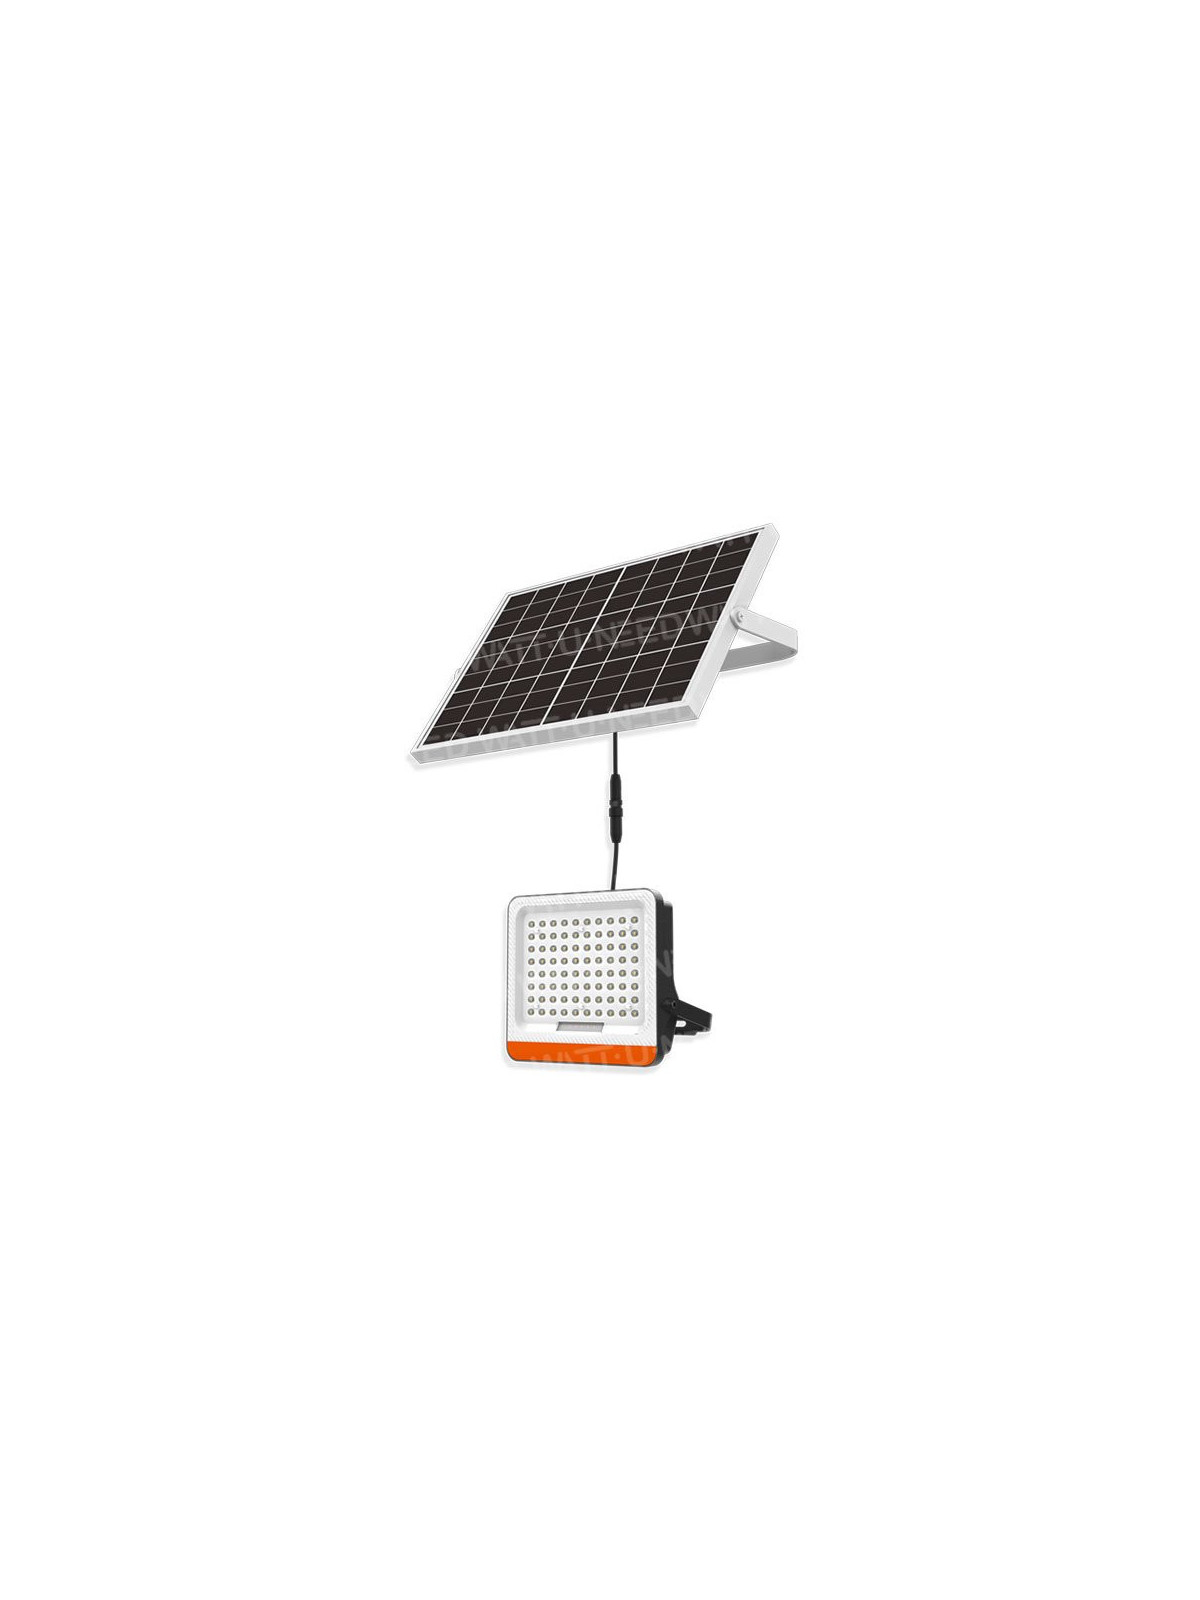 Kit panneau solaire mono 5W 12V avec régulateur 5A et batterie à